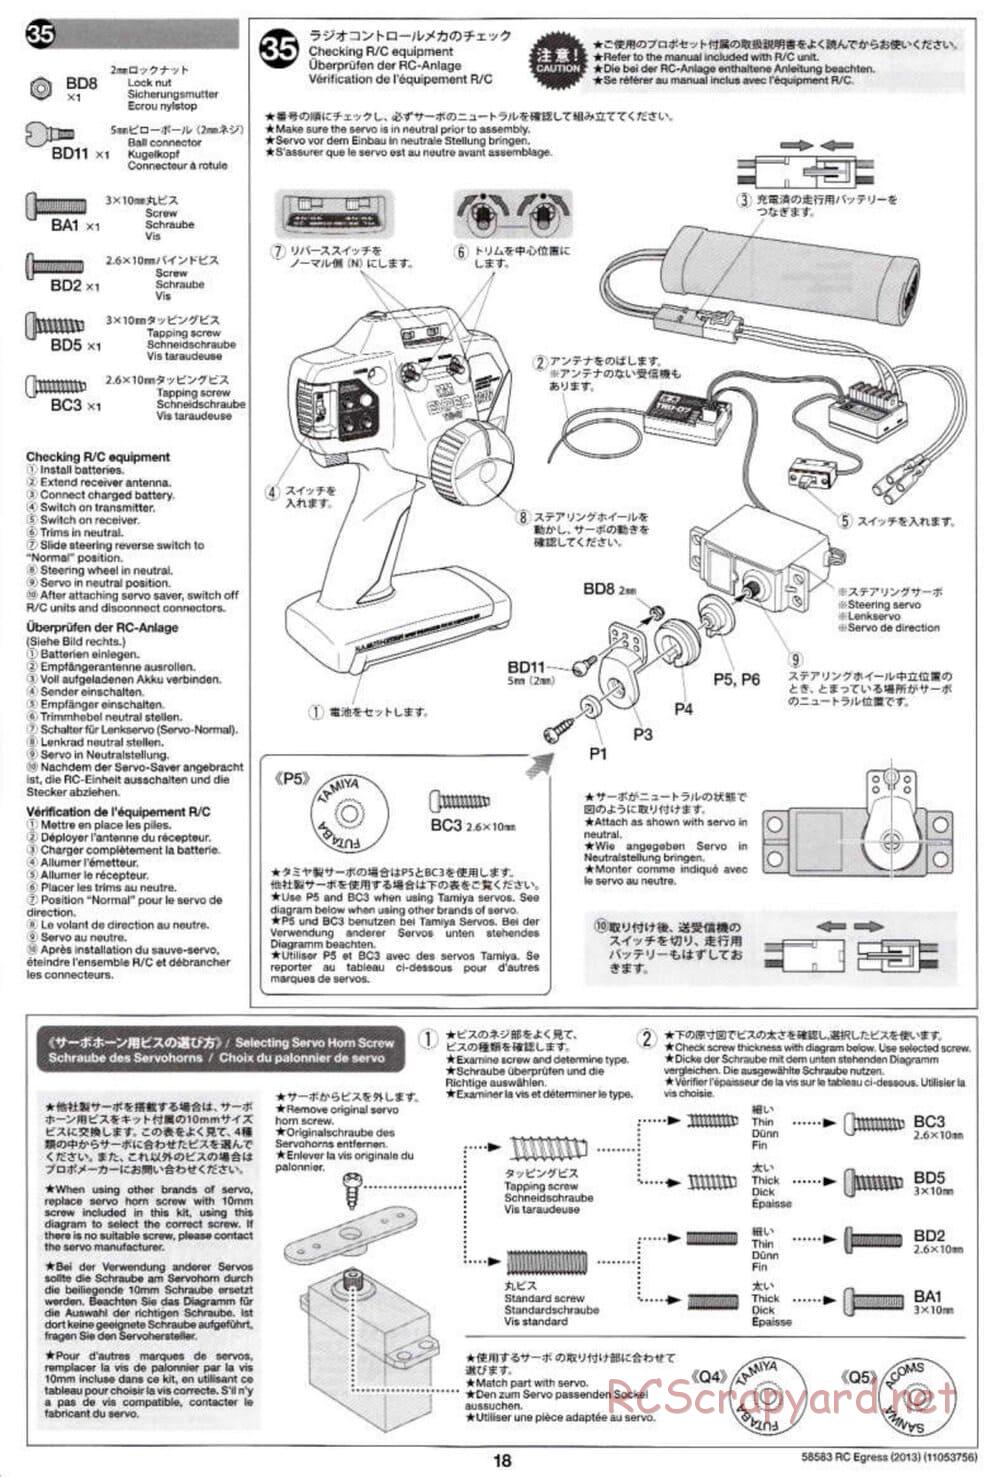 Tamiya - Egress 2013 - AV Chassis - Manual - Page 18